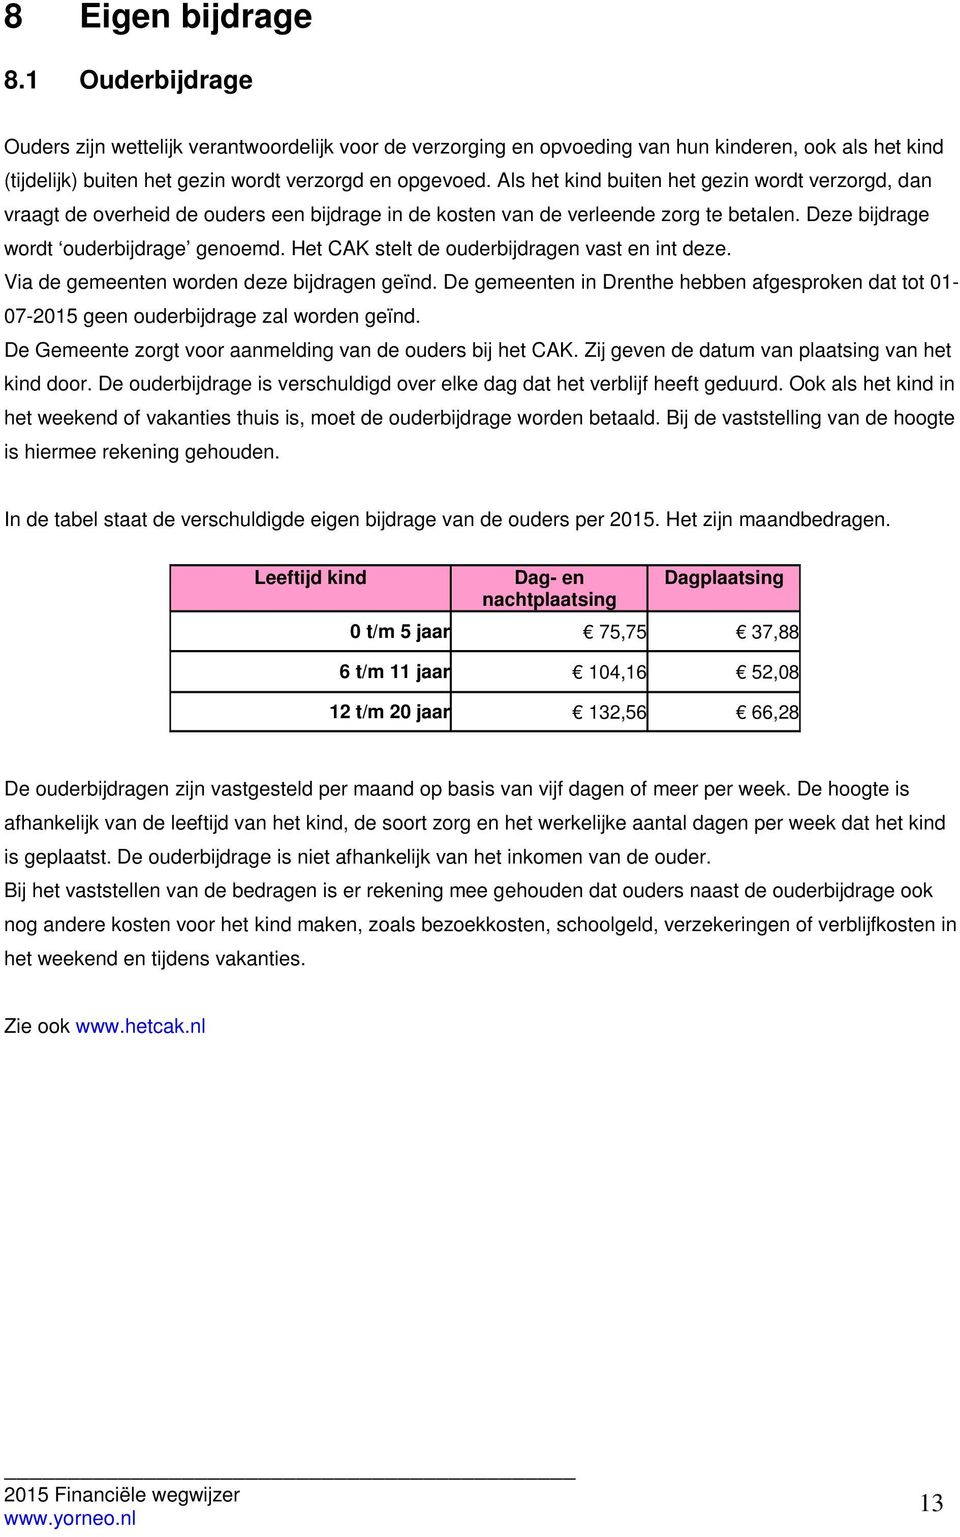 Het CAK stelt de ouderbijdragen vast en int deze. Via de gemeenten worden deze bijdragen geïnd. De gemeenten in Drenthe hebben afgesproken dat tot 01-07-2015 geen ouderbijdrage zal worden geïnd.